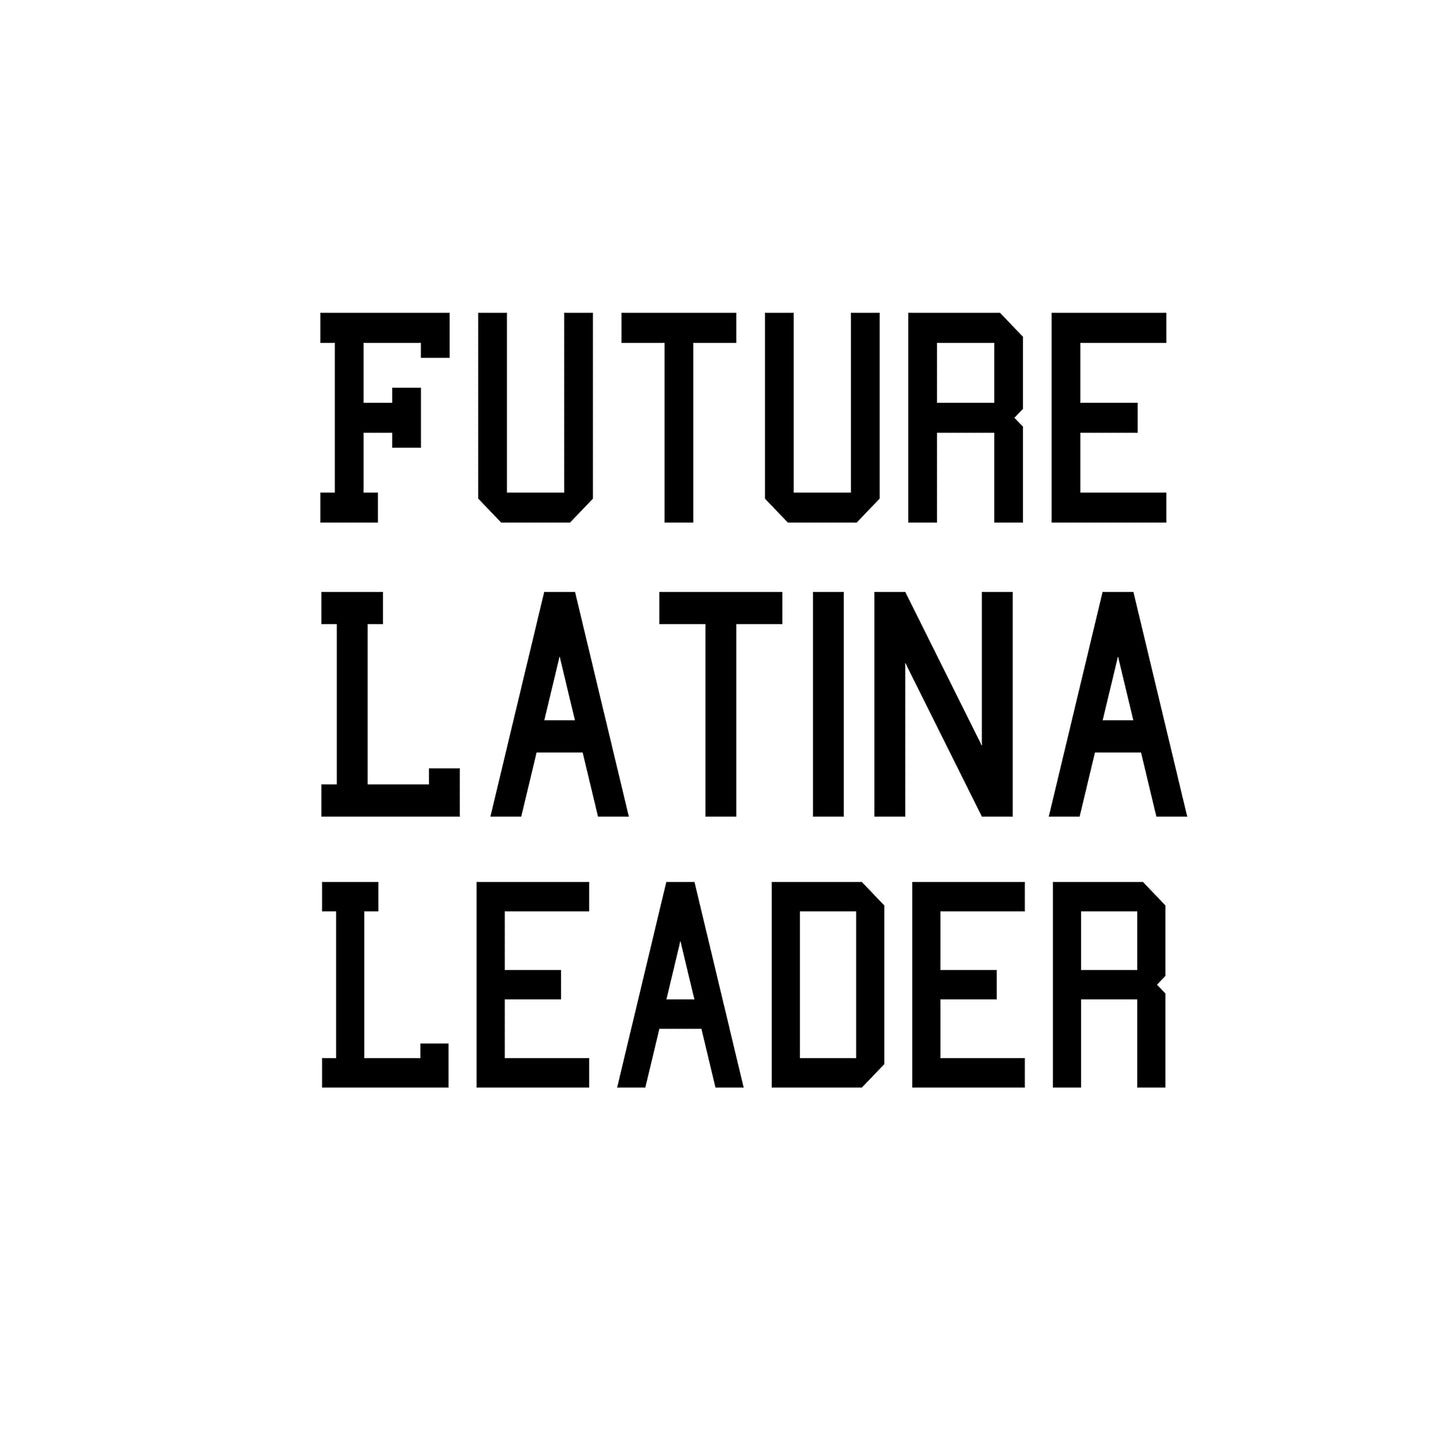 Futura Líder Latina (Mujeres)